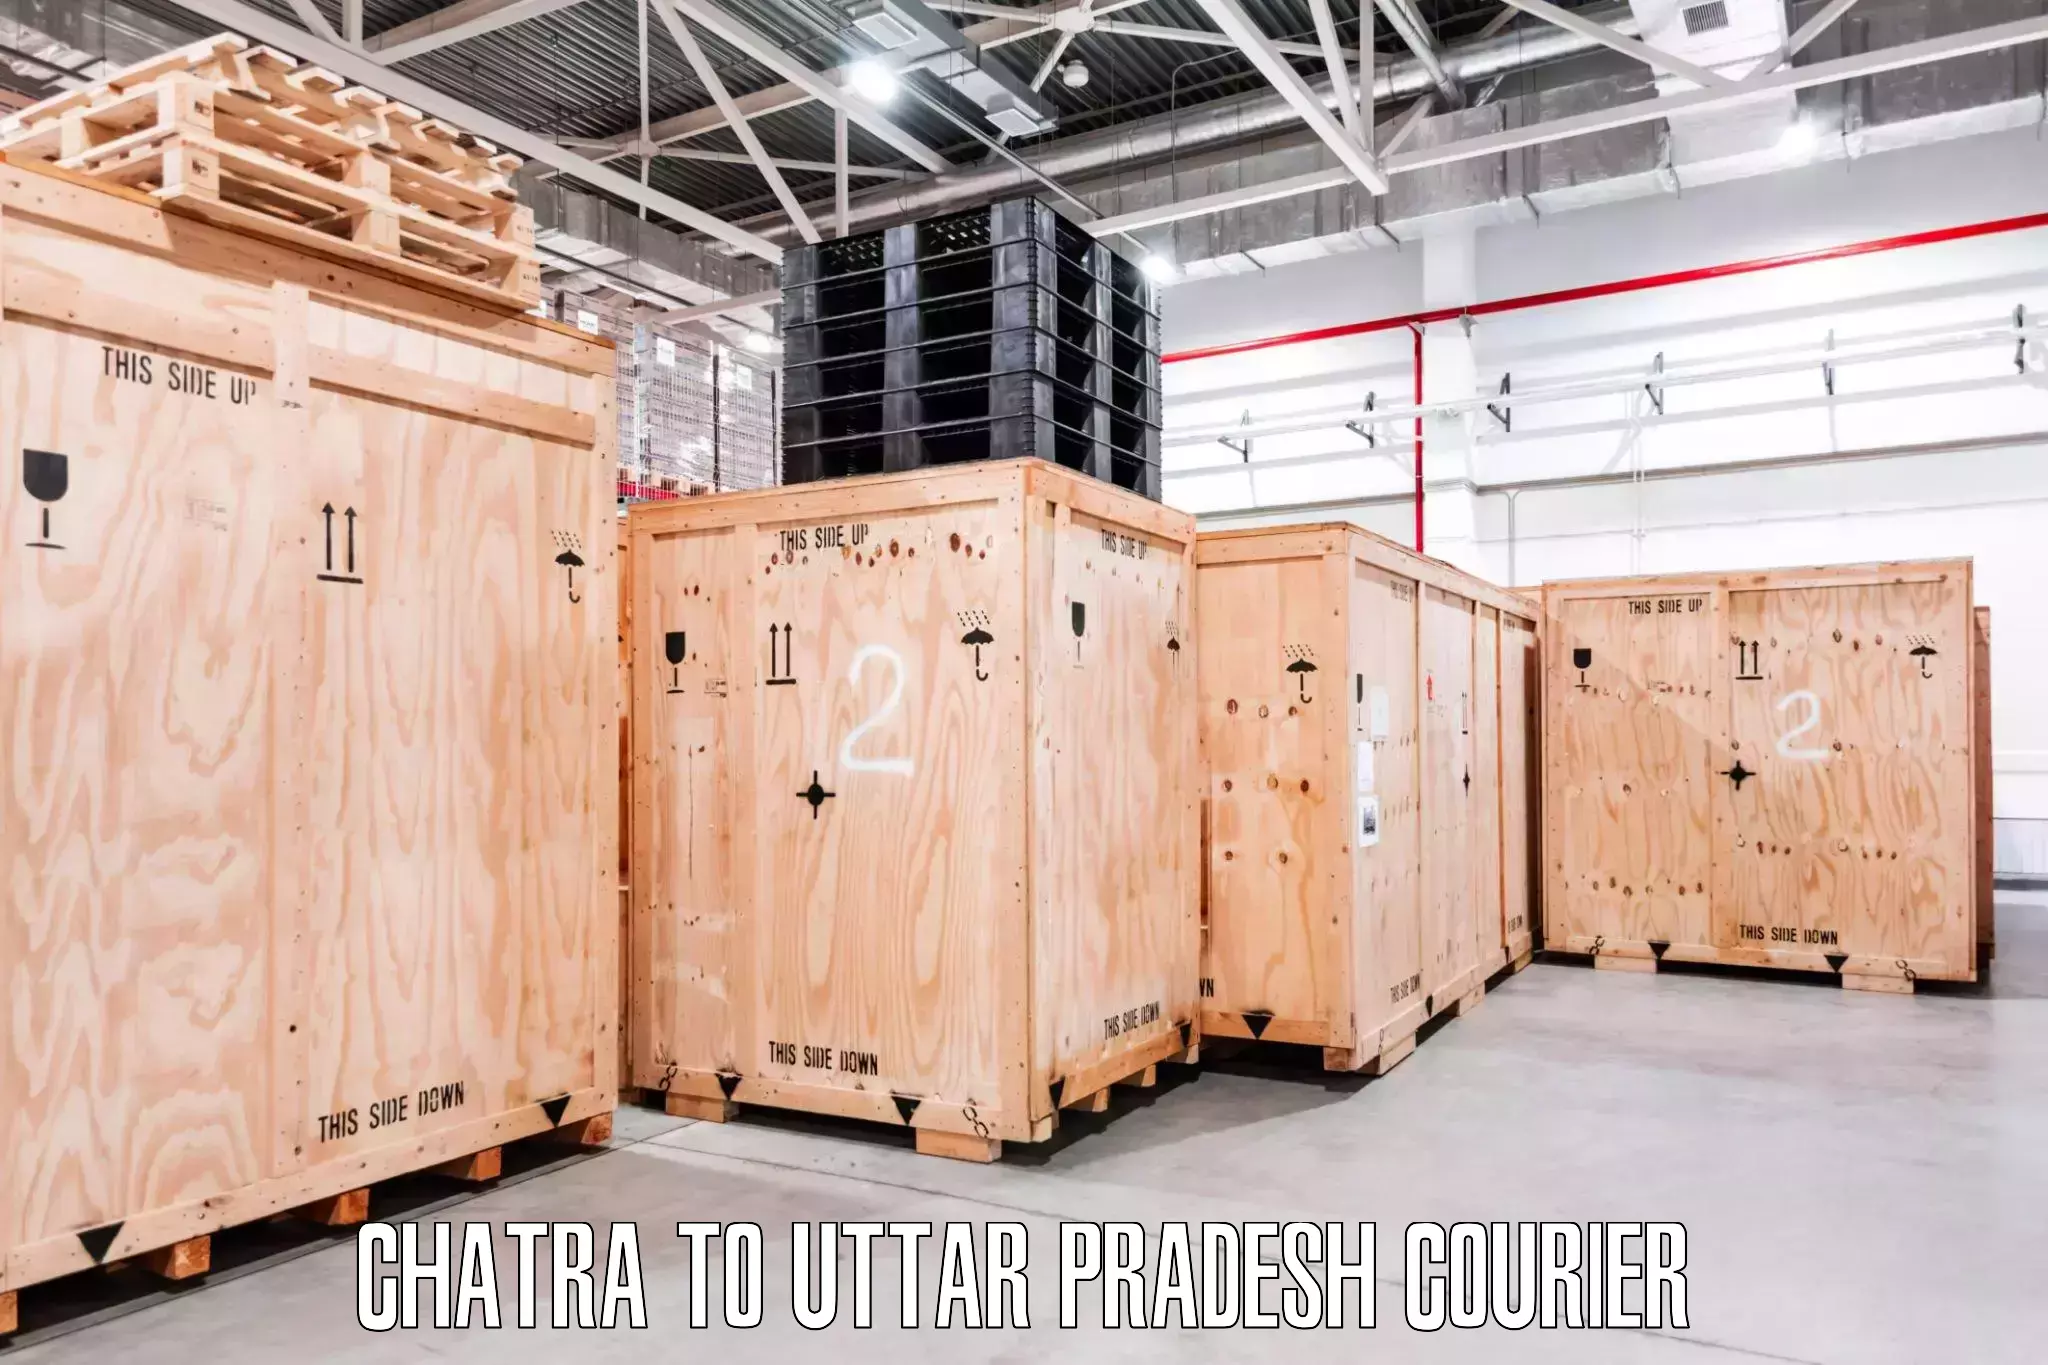 Efficient moving company Chatra to Bacchawaran